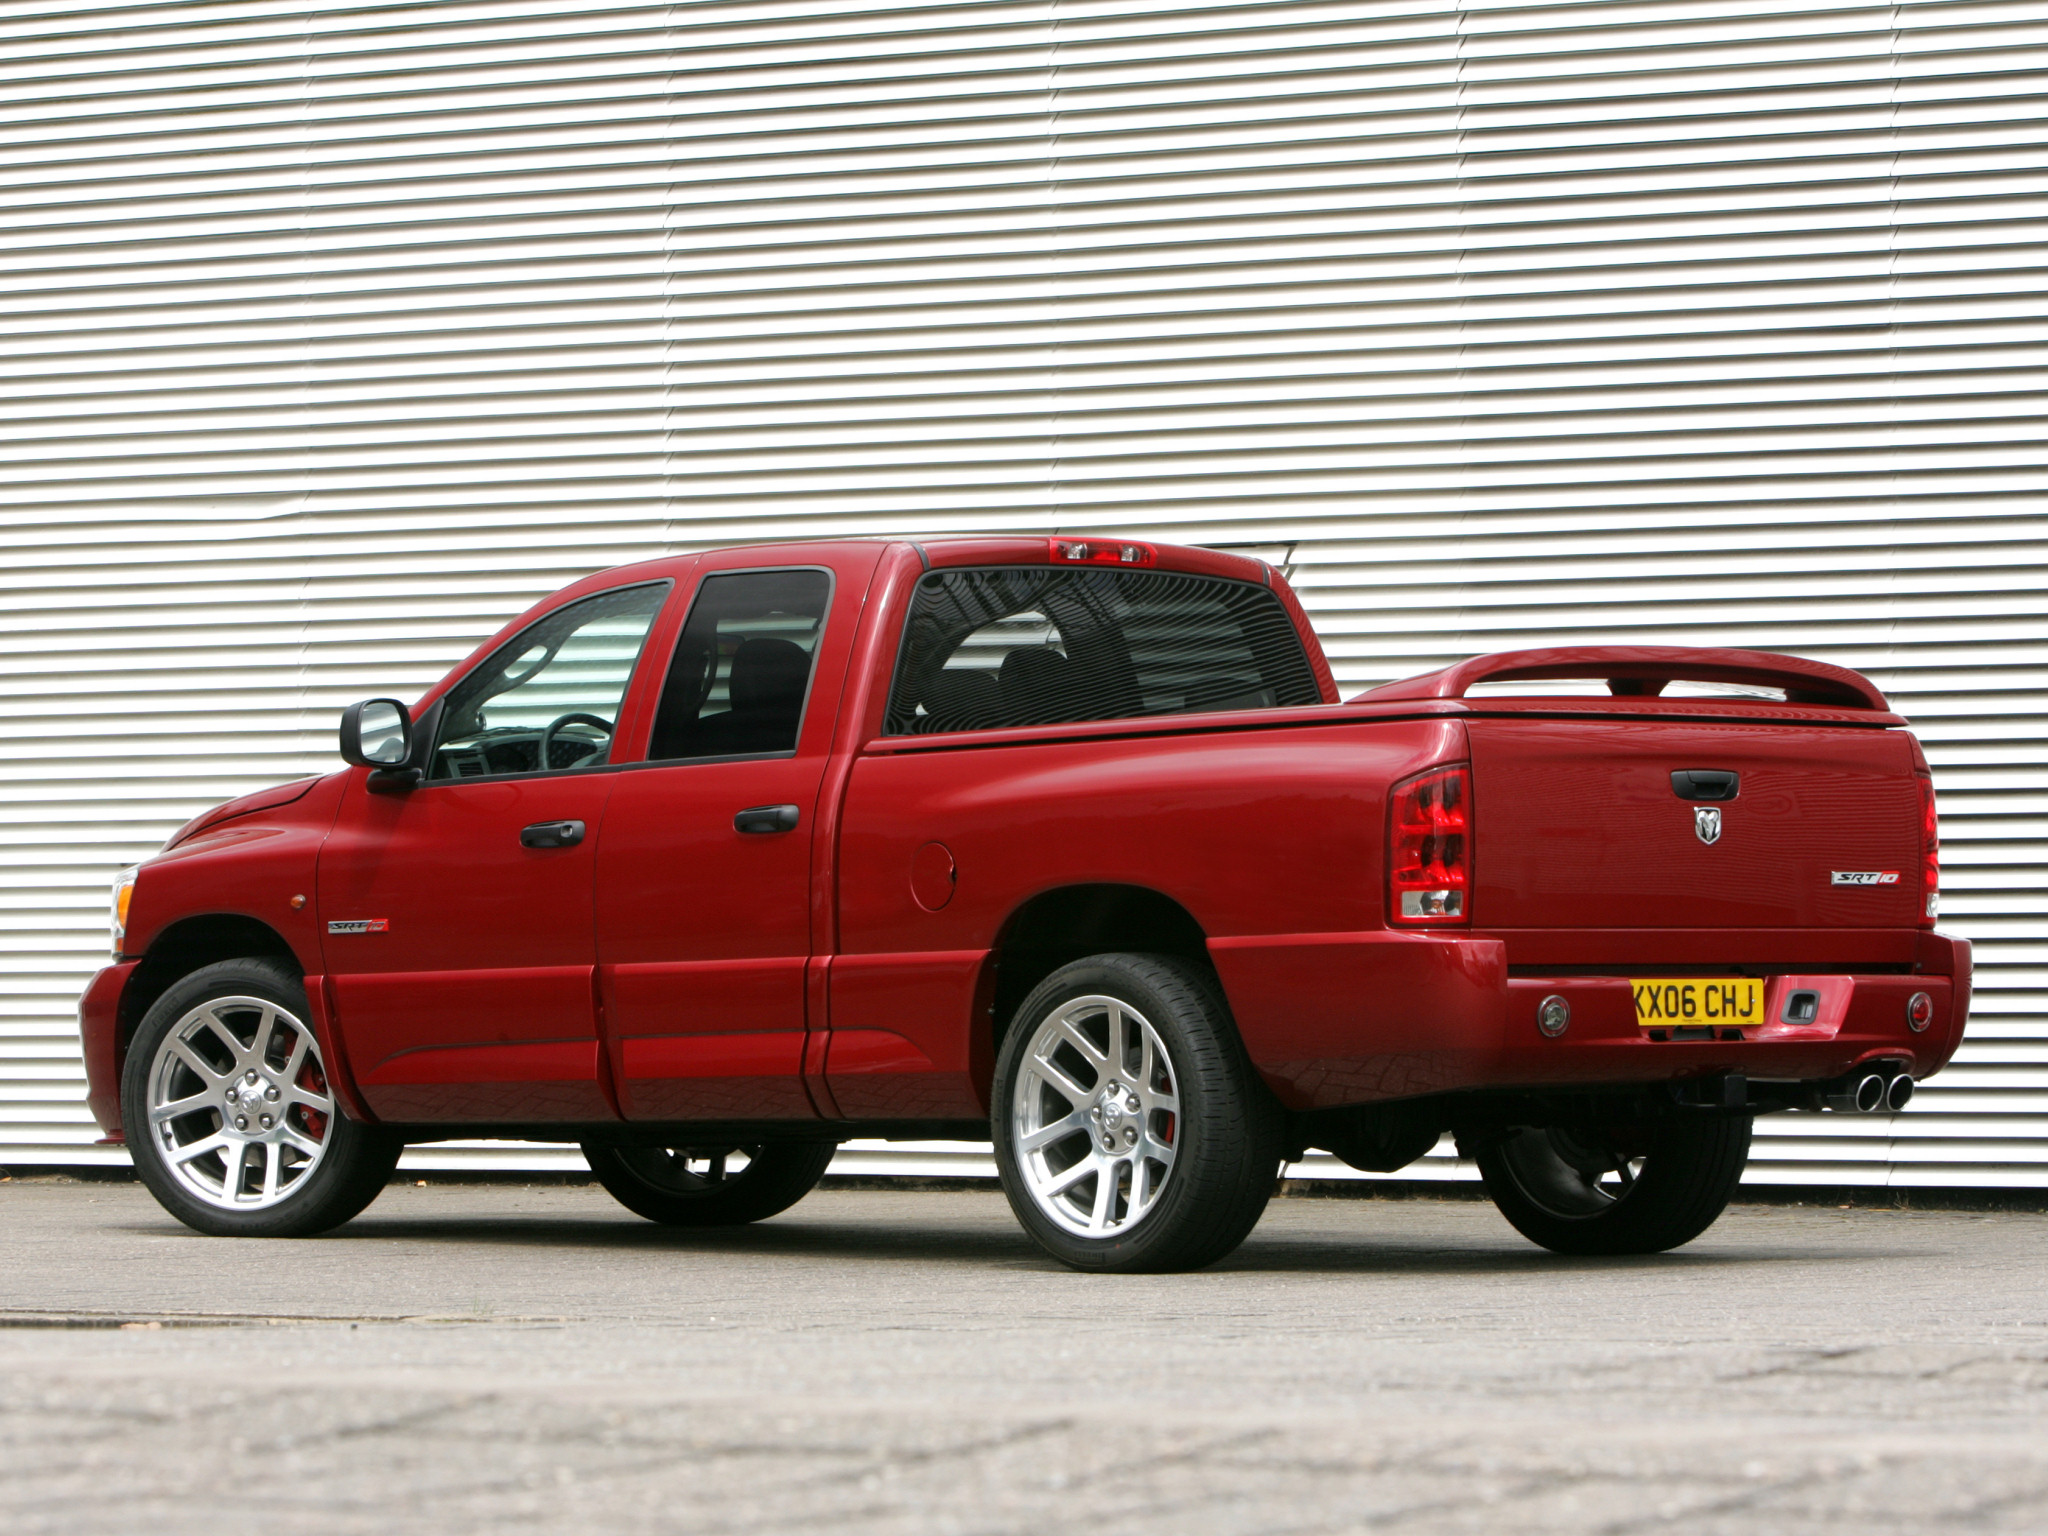 2007, Dodge, Ram, Srt 10, Truck, Muscle Wallpaper